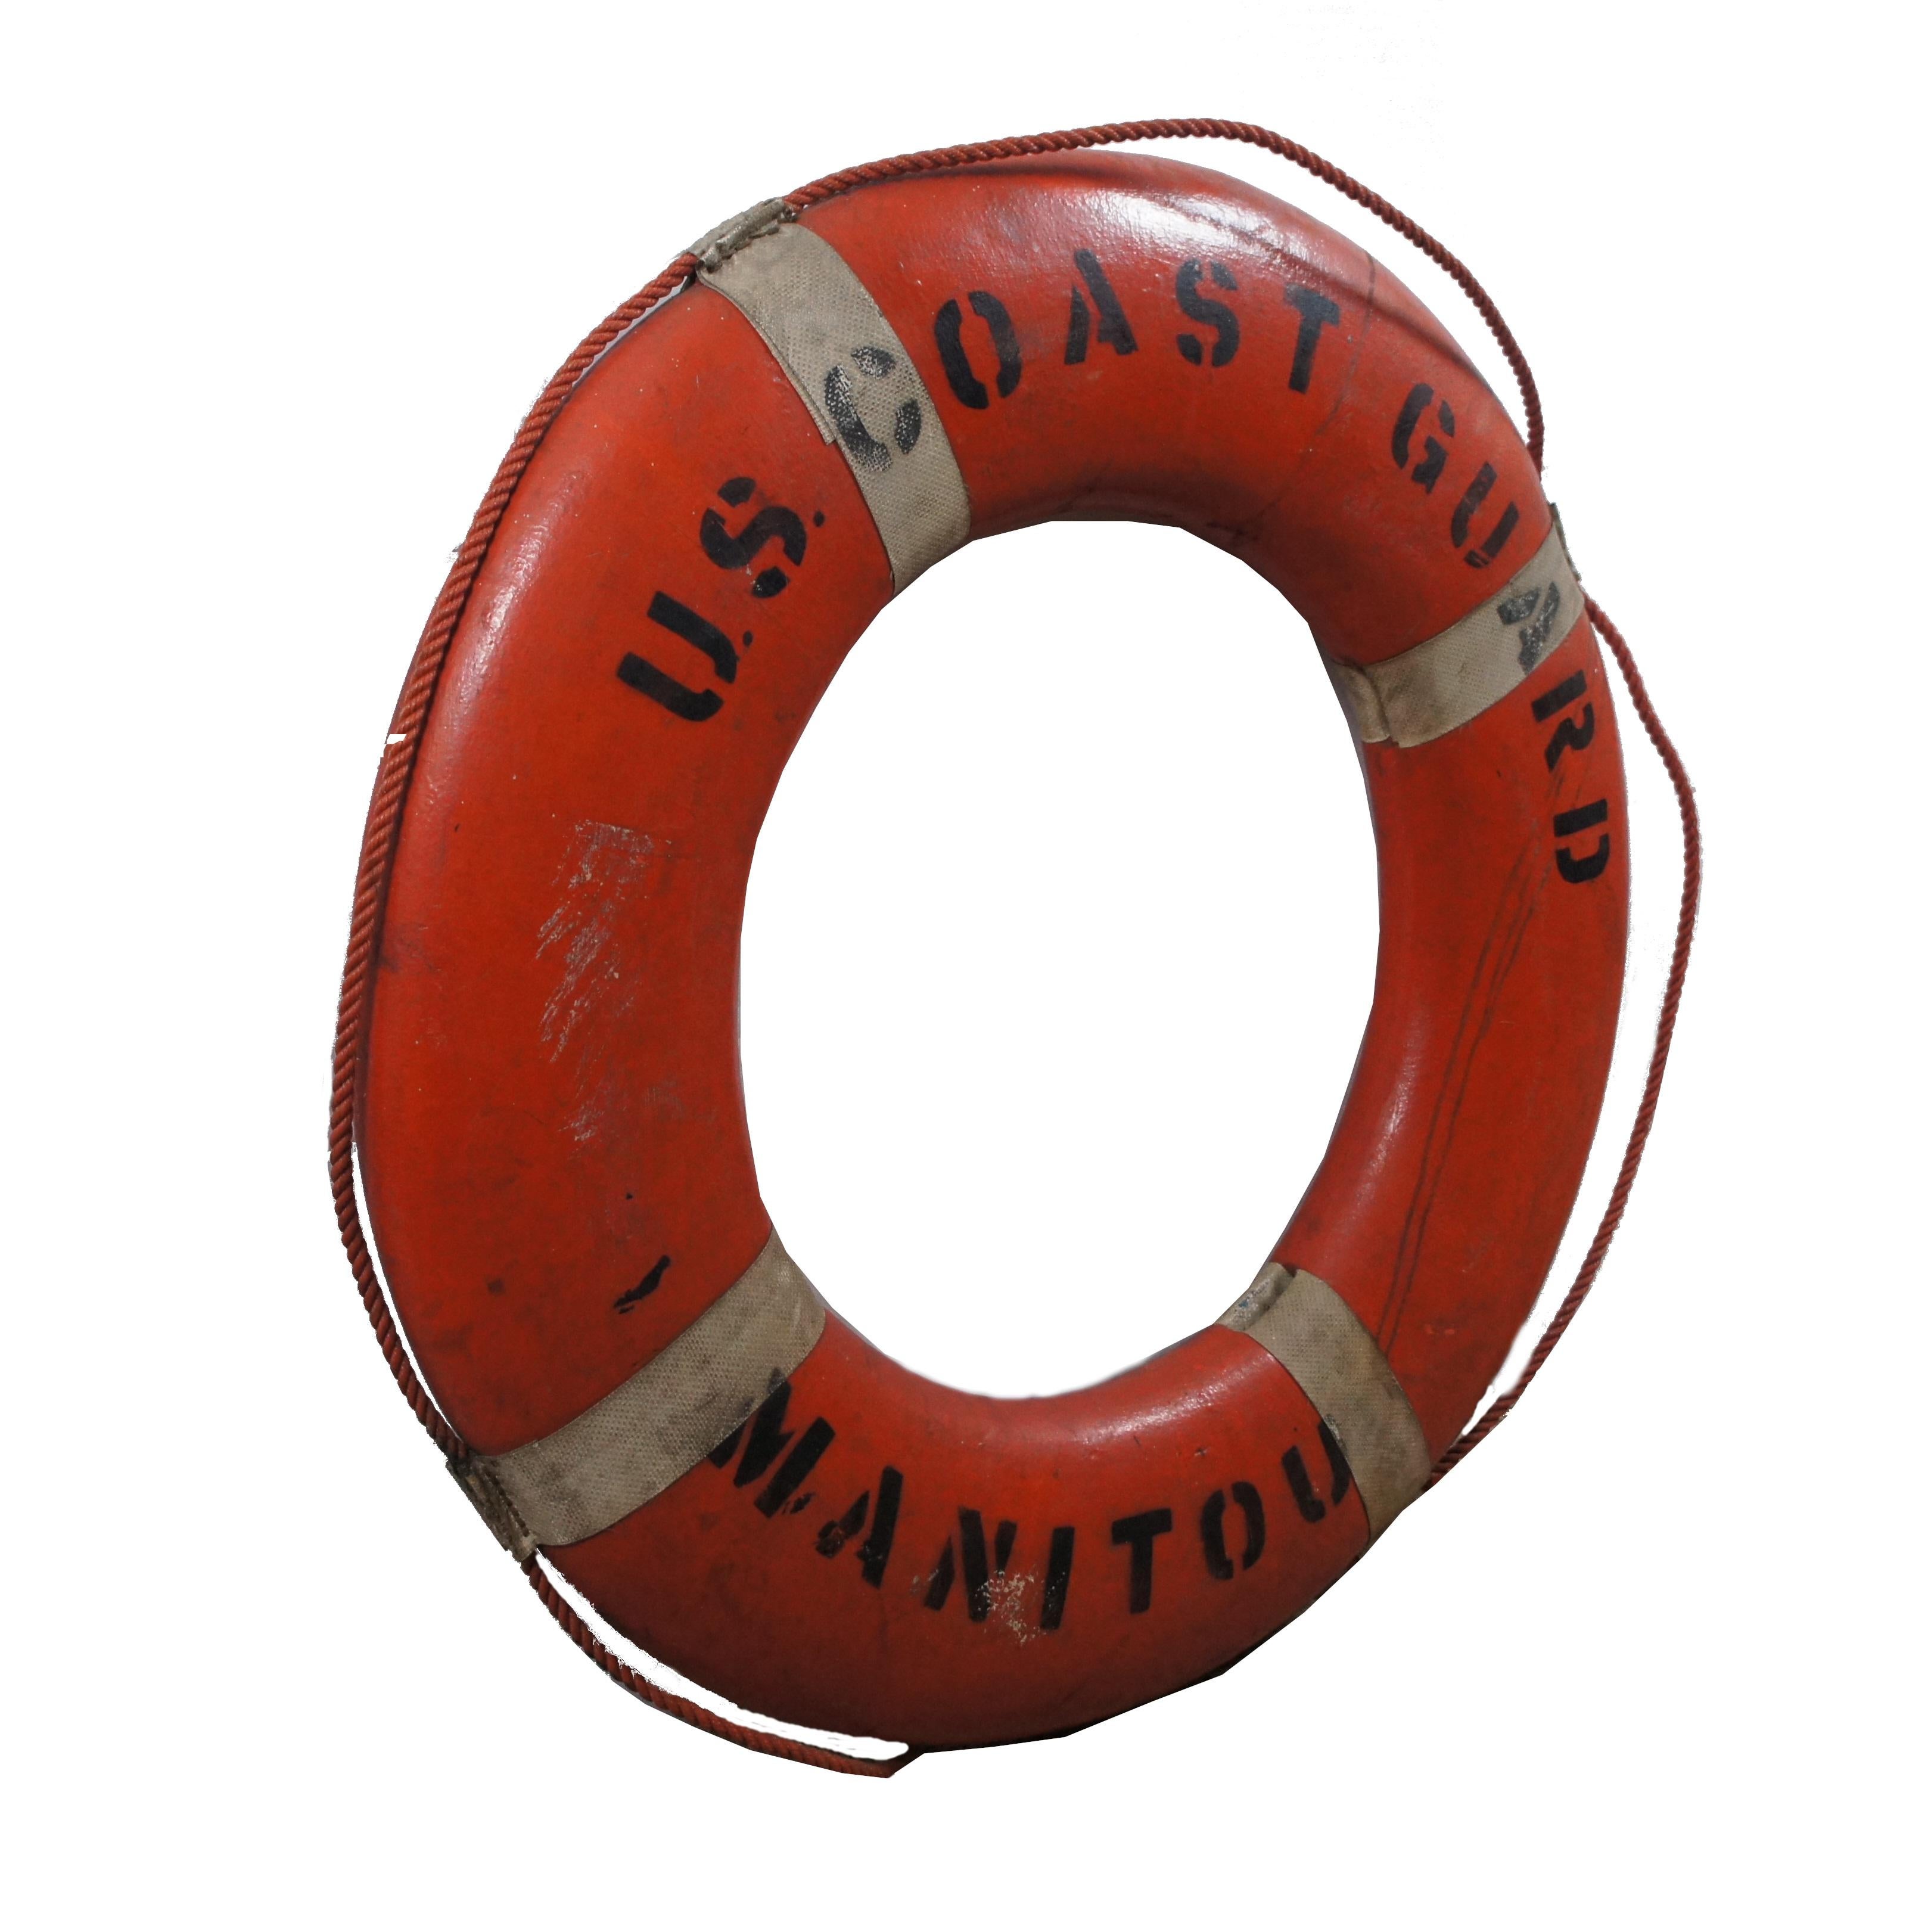 Nautischer, maritimer U.S. Coast Guard Manitou Hartschaumbojen-Sicherheitsring aus der Mitte des Jahrhunderts mit orangefarbener Außenseite, weißen Riemen und orangefarbenen Seilgriffen.

